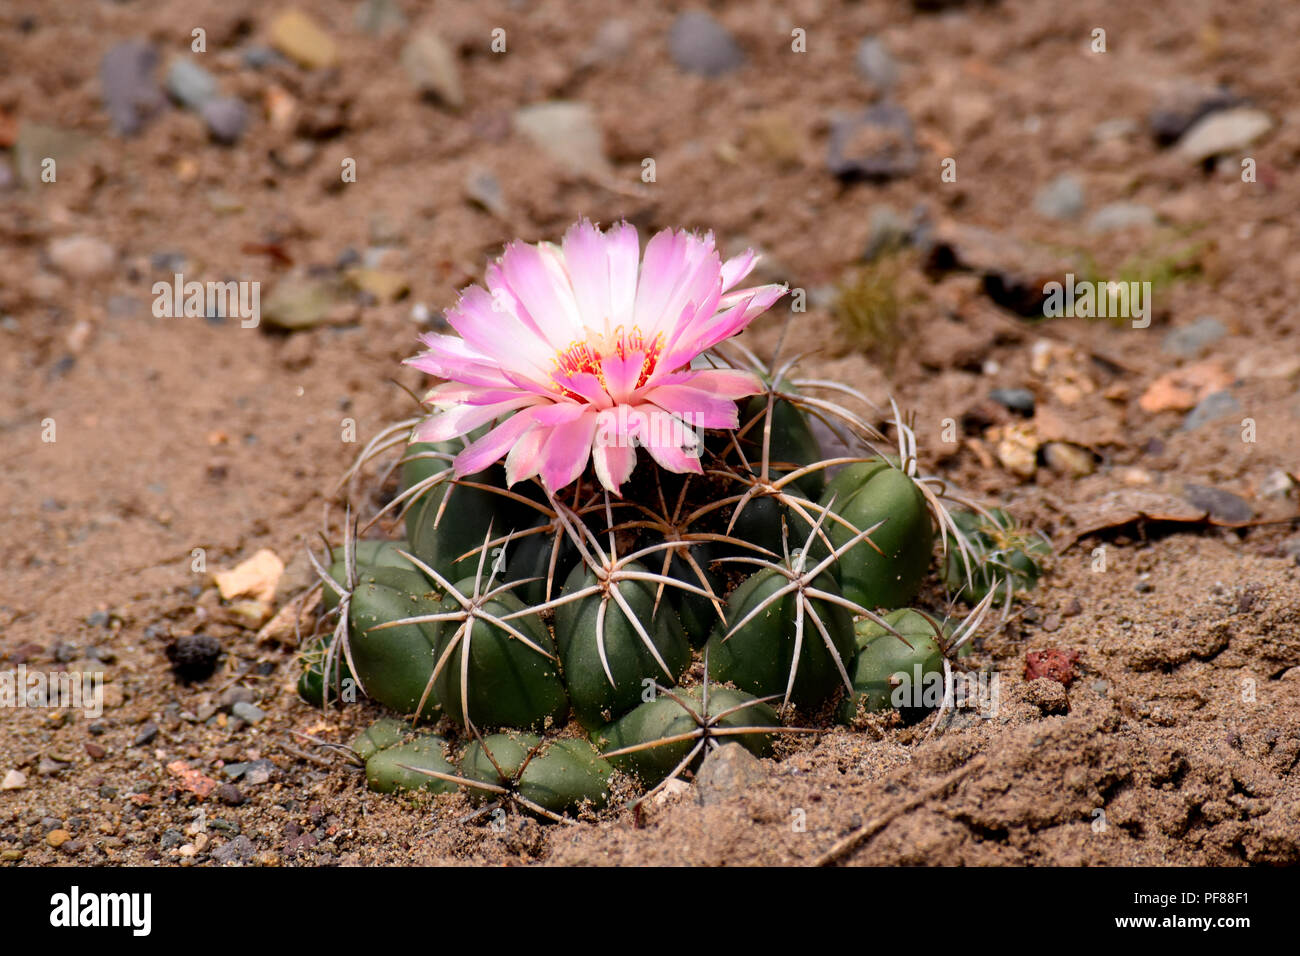 Mammillaria compressa cactus flower in full bloom. Stock Photo